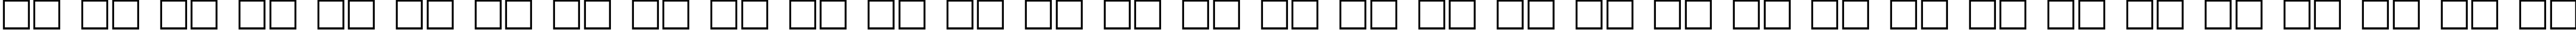 Пример написания русского алфавита шрифтом DG_Sinaloa